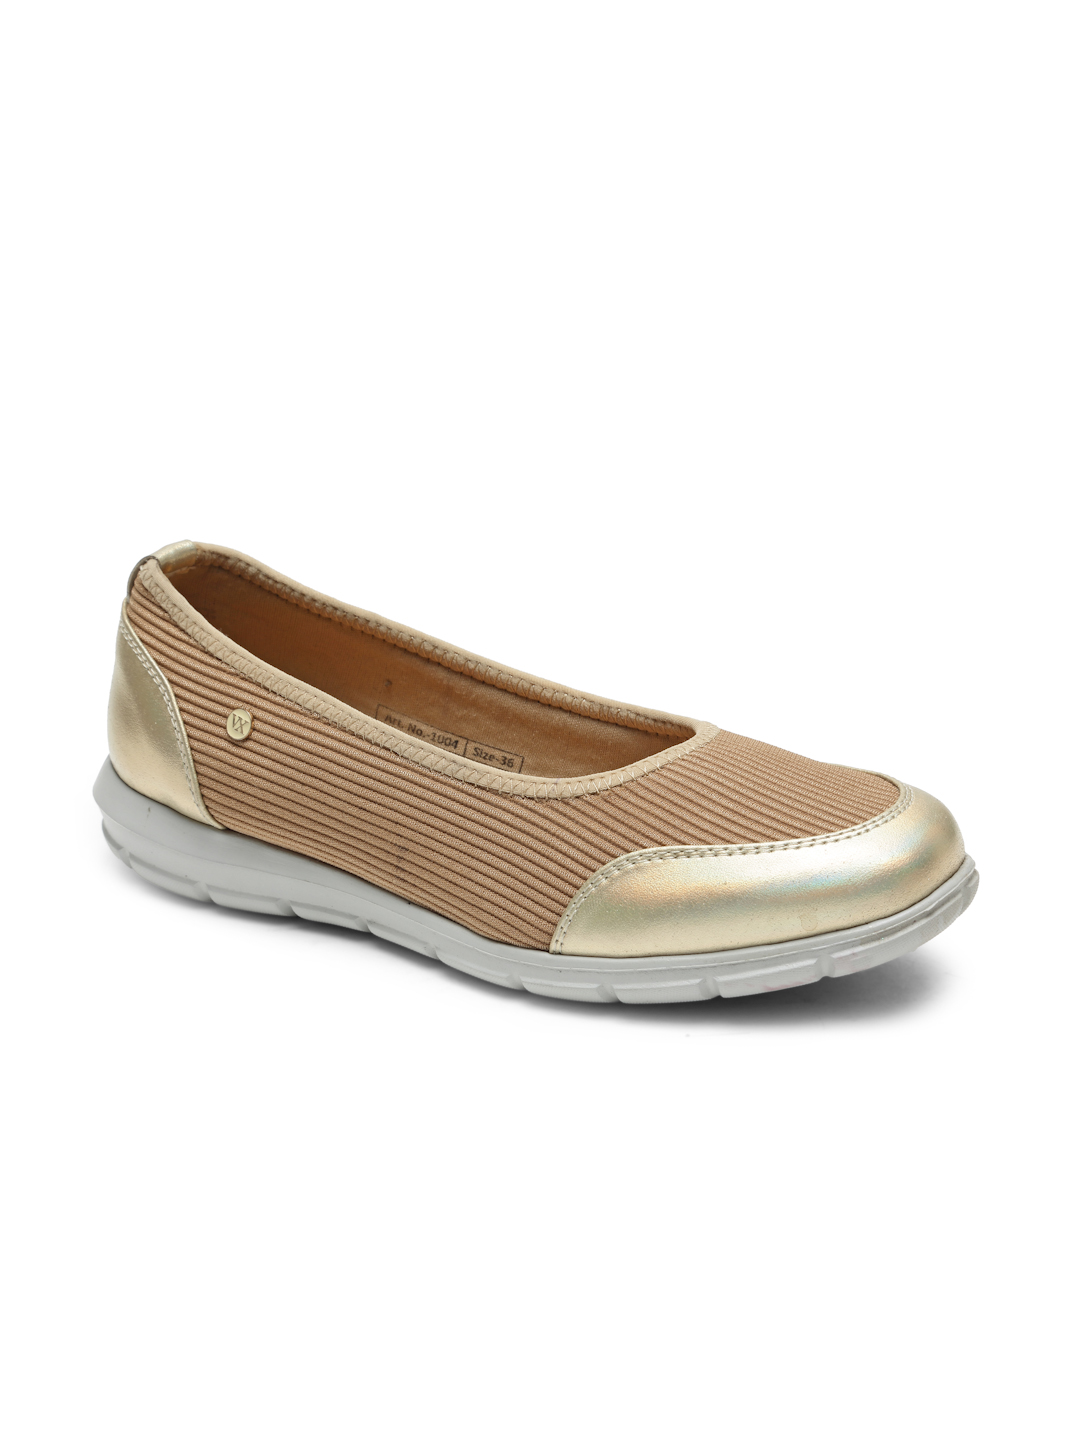 Buy Von Wellx Germany Comfort Women's Beige Casual Shoes Alice Online in Ranchi